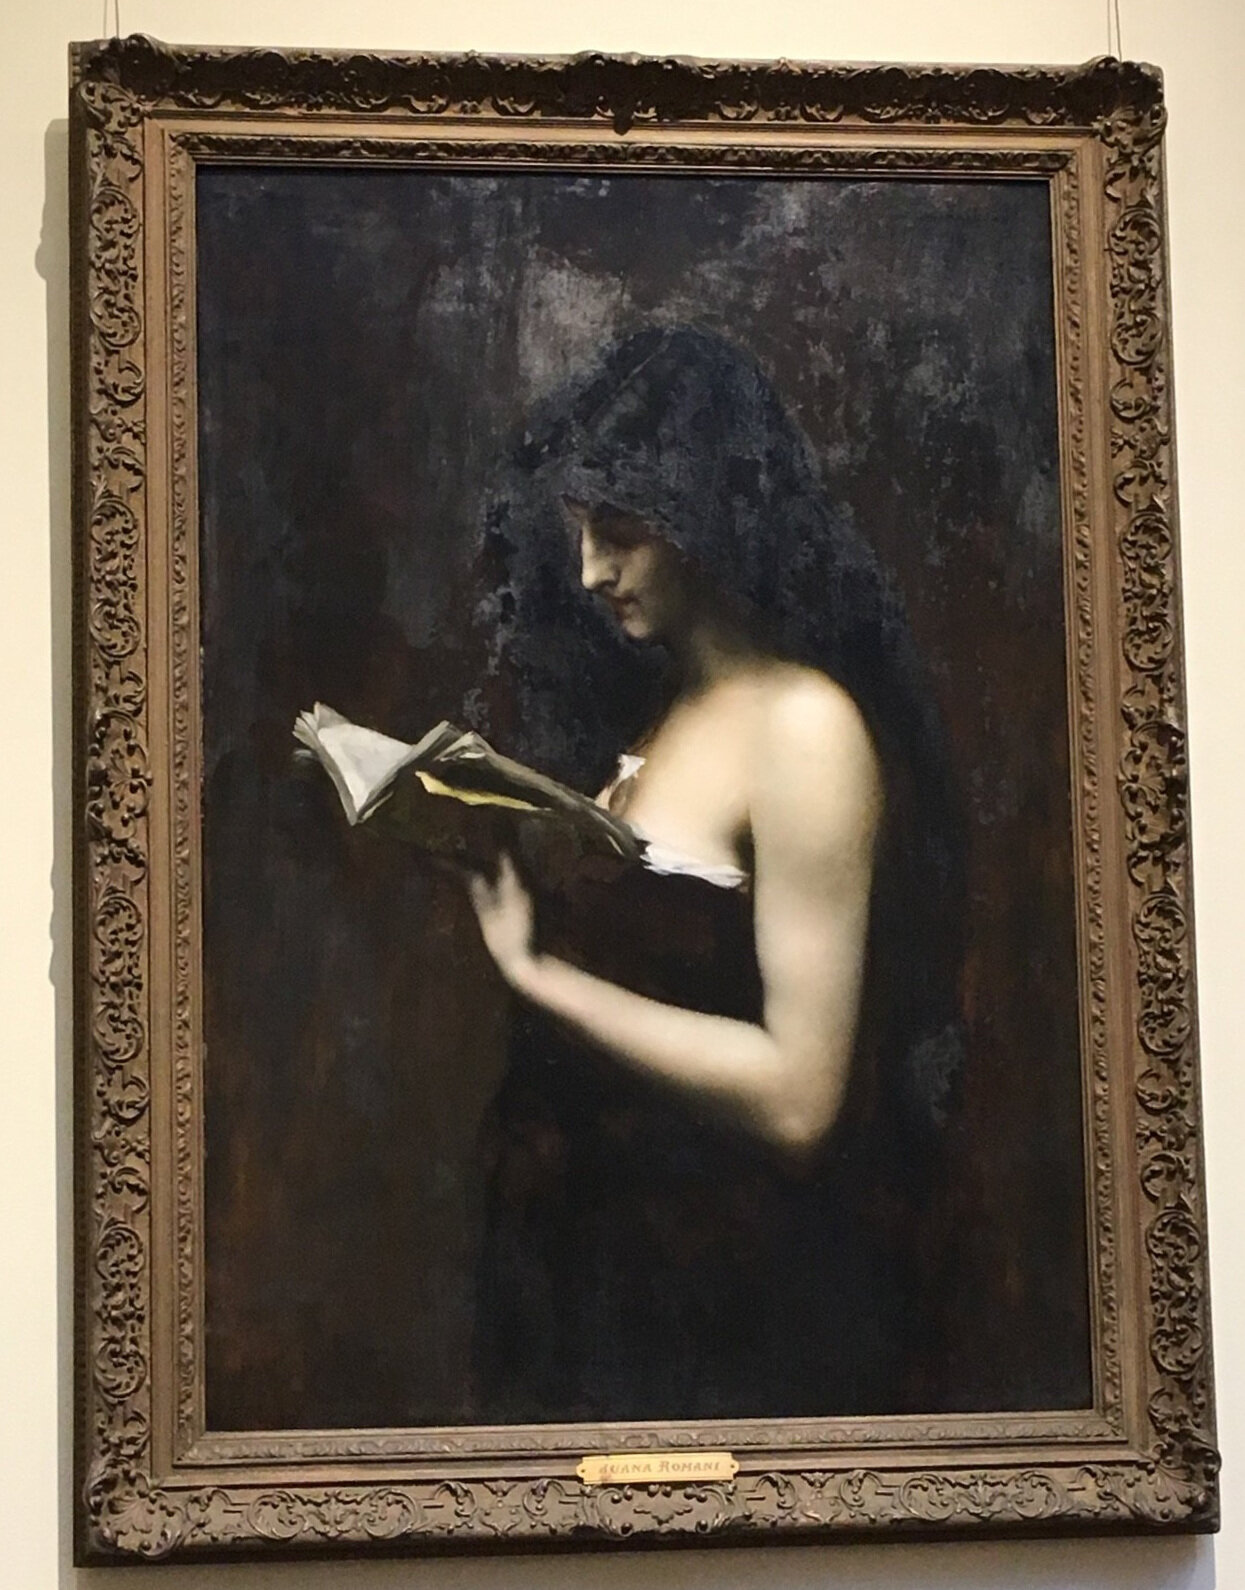 "The Reader" by Juana Romani, née Carolina Carlesimo